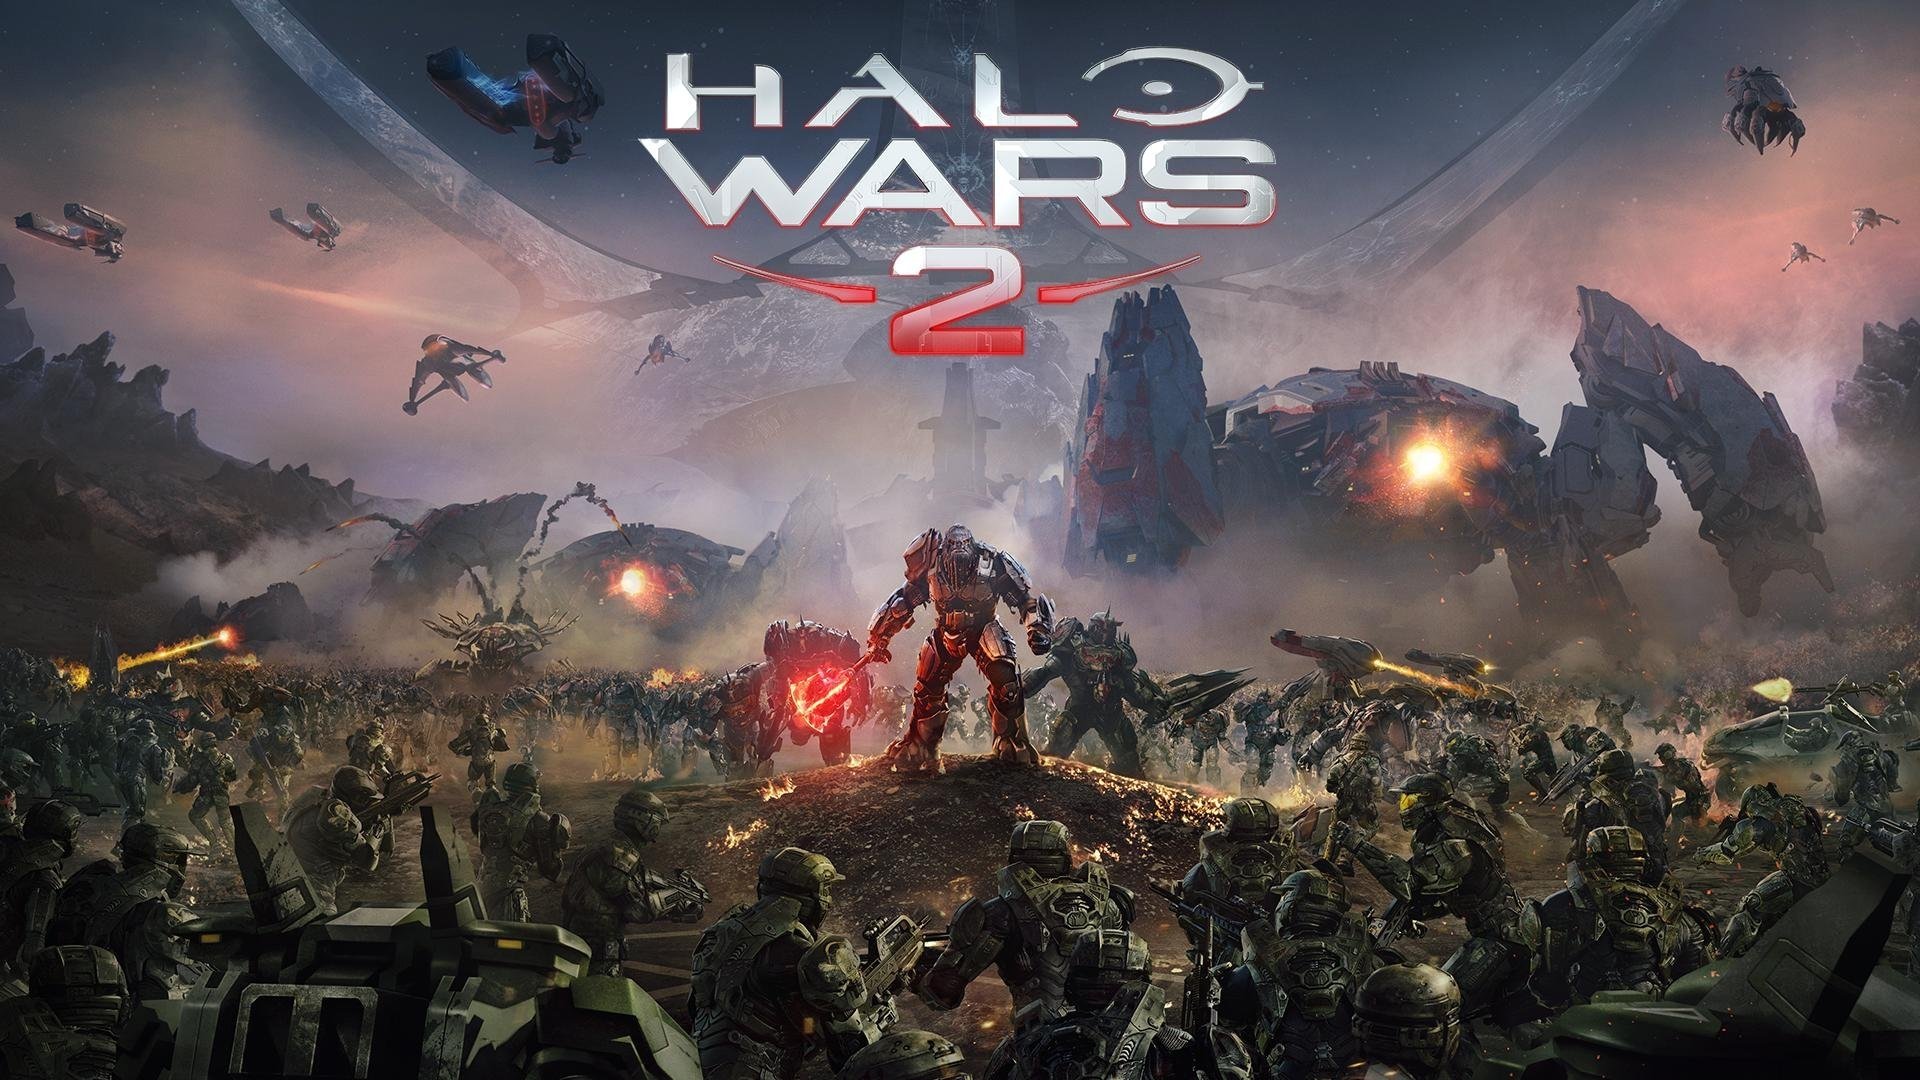 Halo Wars Wallpaper Hd - Halo Wars 2 Release Date , HD Wallpaper & Backgrounds